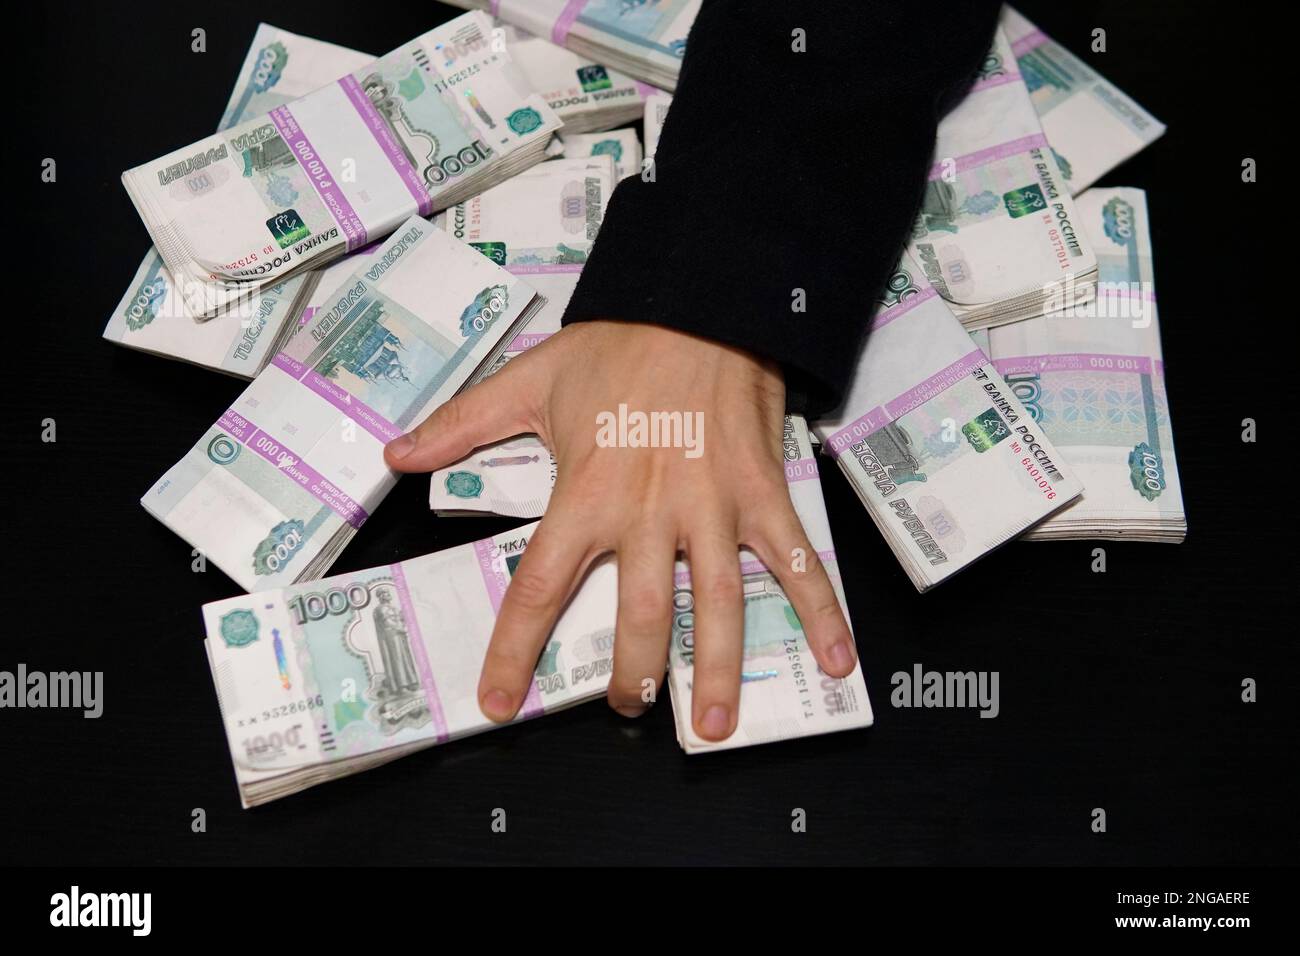 Les mains des hommes pour atteindre une liasse d'argent. Un million de roubles sur le tableau noir. Le concept de la richesse, le succès, la cupidité et la corruption, la soif de l'argent Banque D'Images